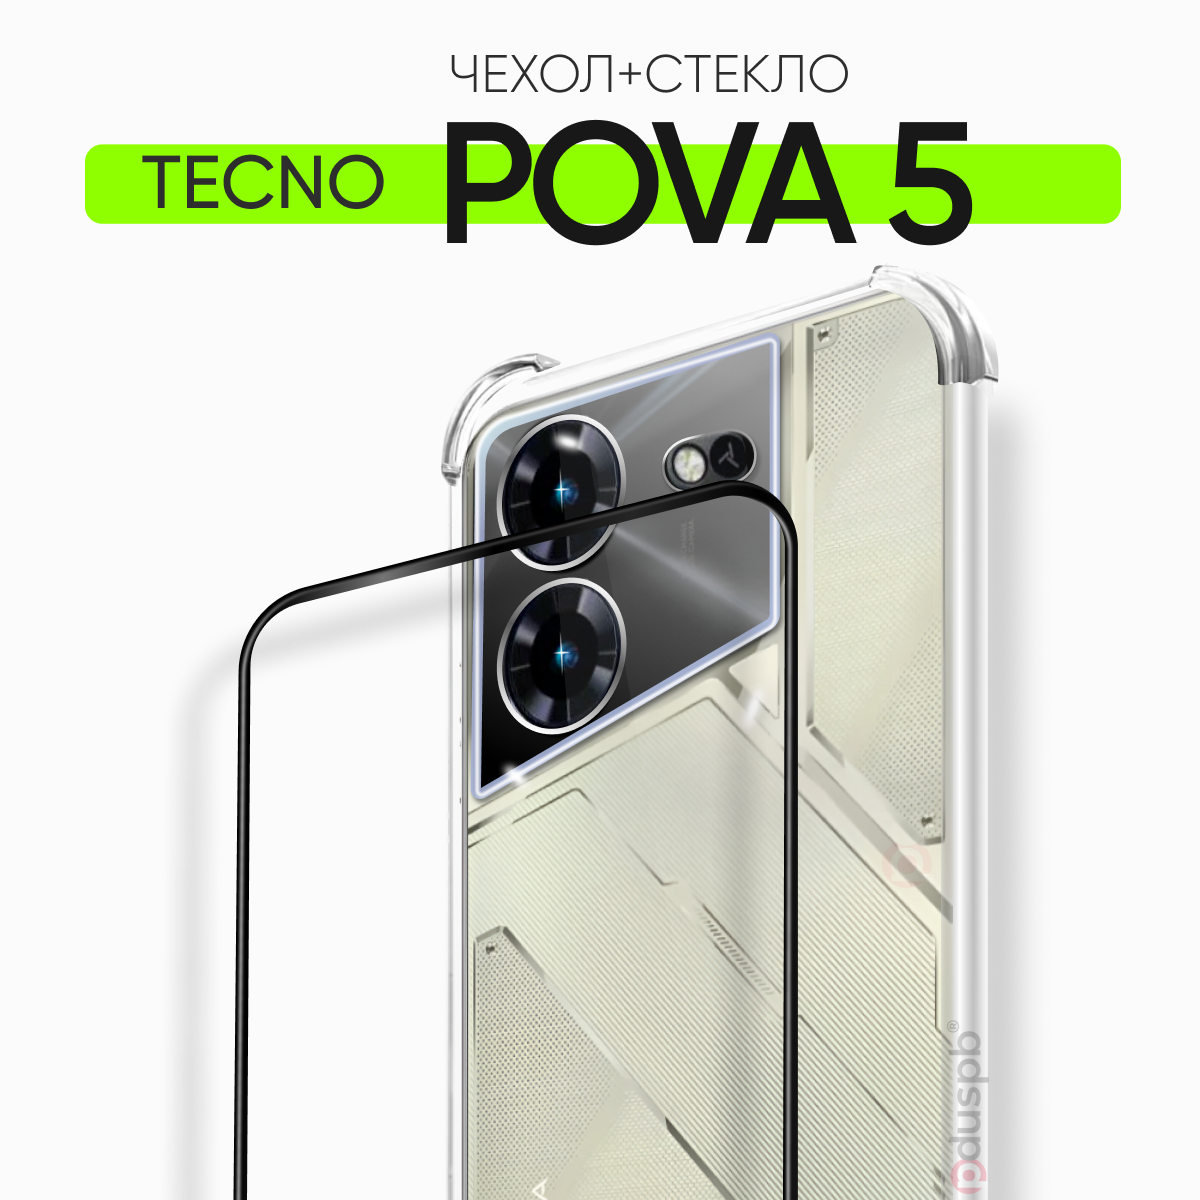 Комплект 2 в 1: Чехол №03 + стекло для Tecno Pova 5 / противоударный силиконовый прозрачный клип-кейс с защитой камеры и углов на Техно Пова 5